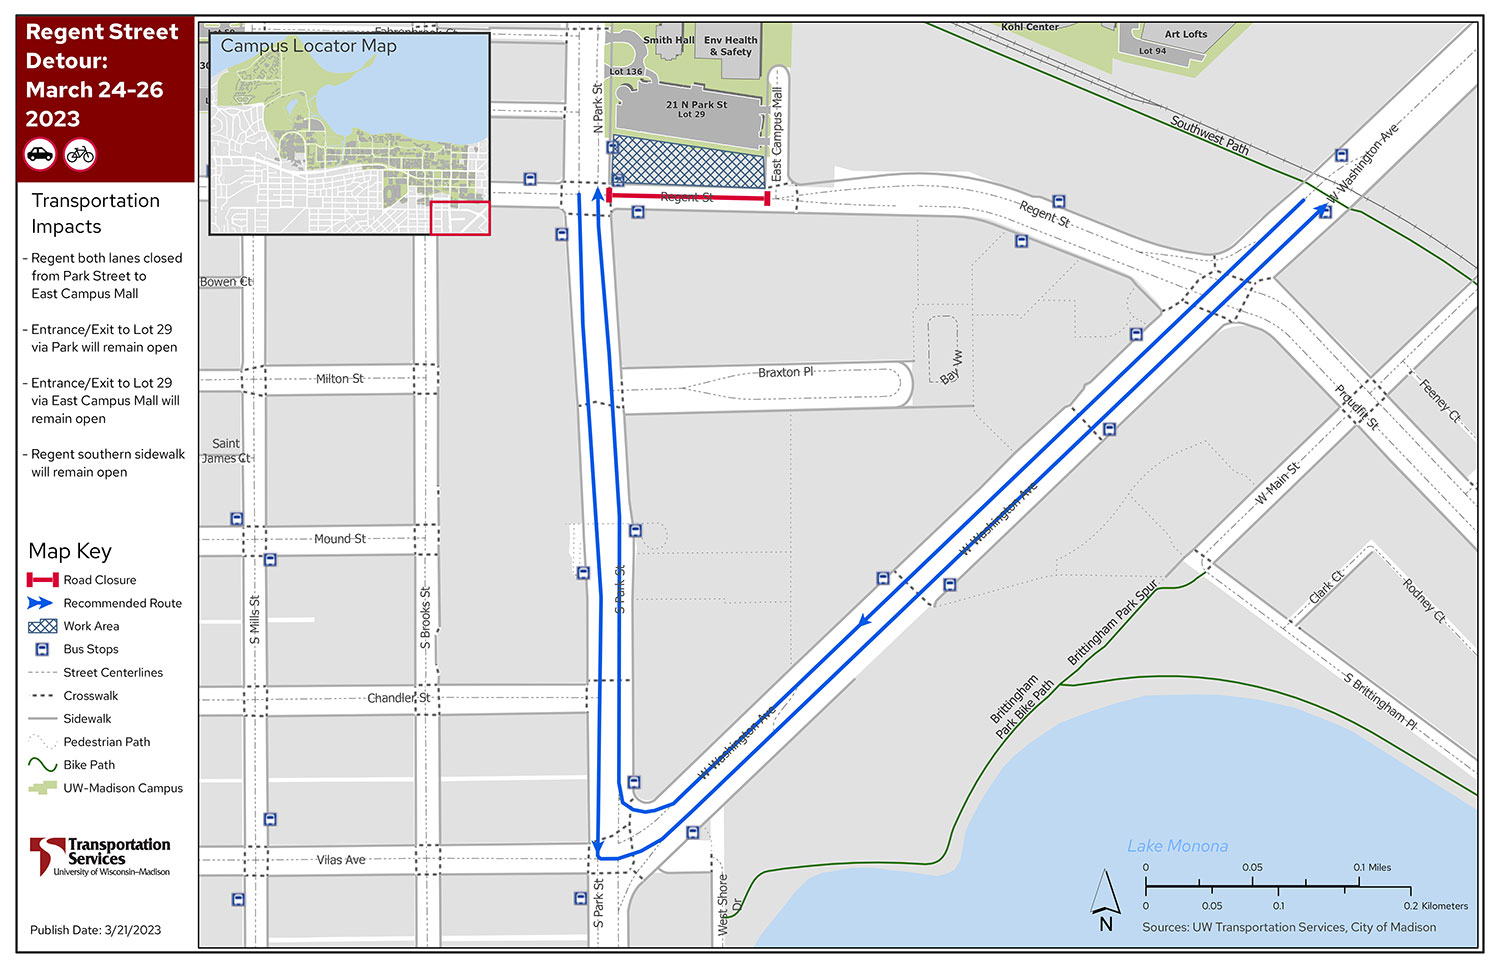 Regent Street closure, March 2023, with detour via Park Street and West Washington Avenue.